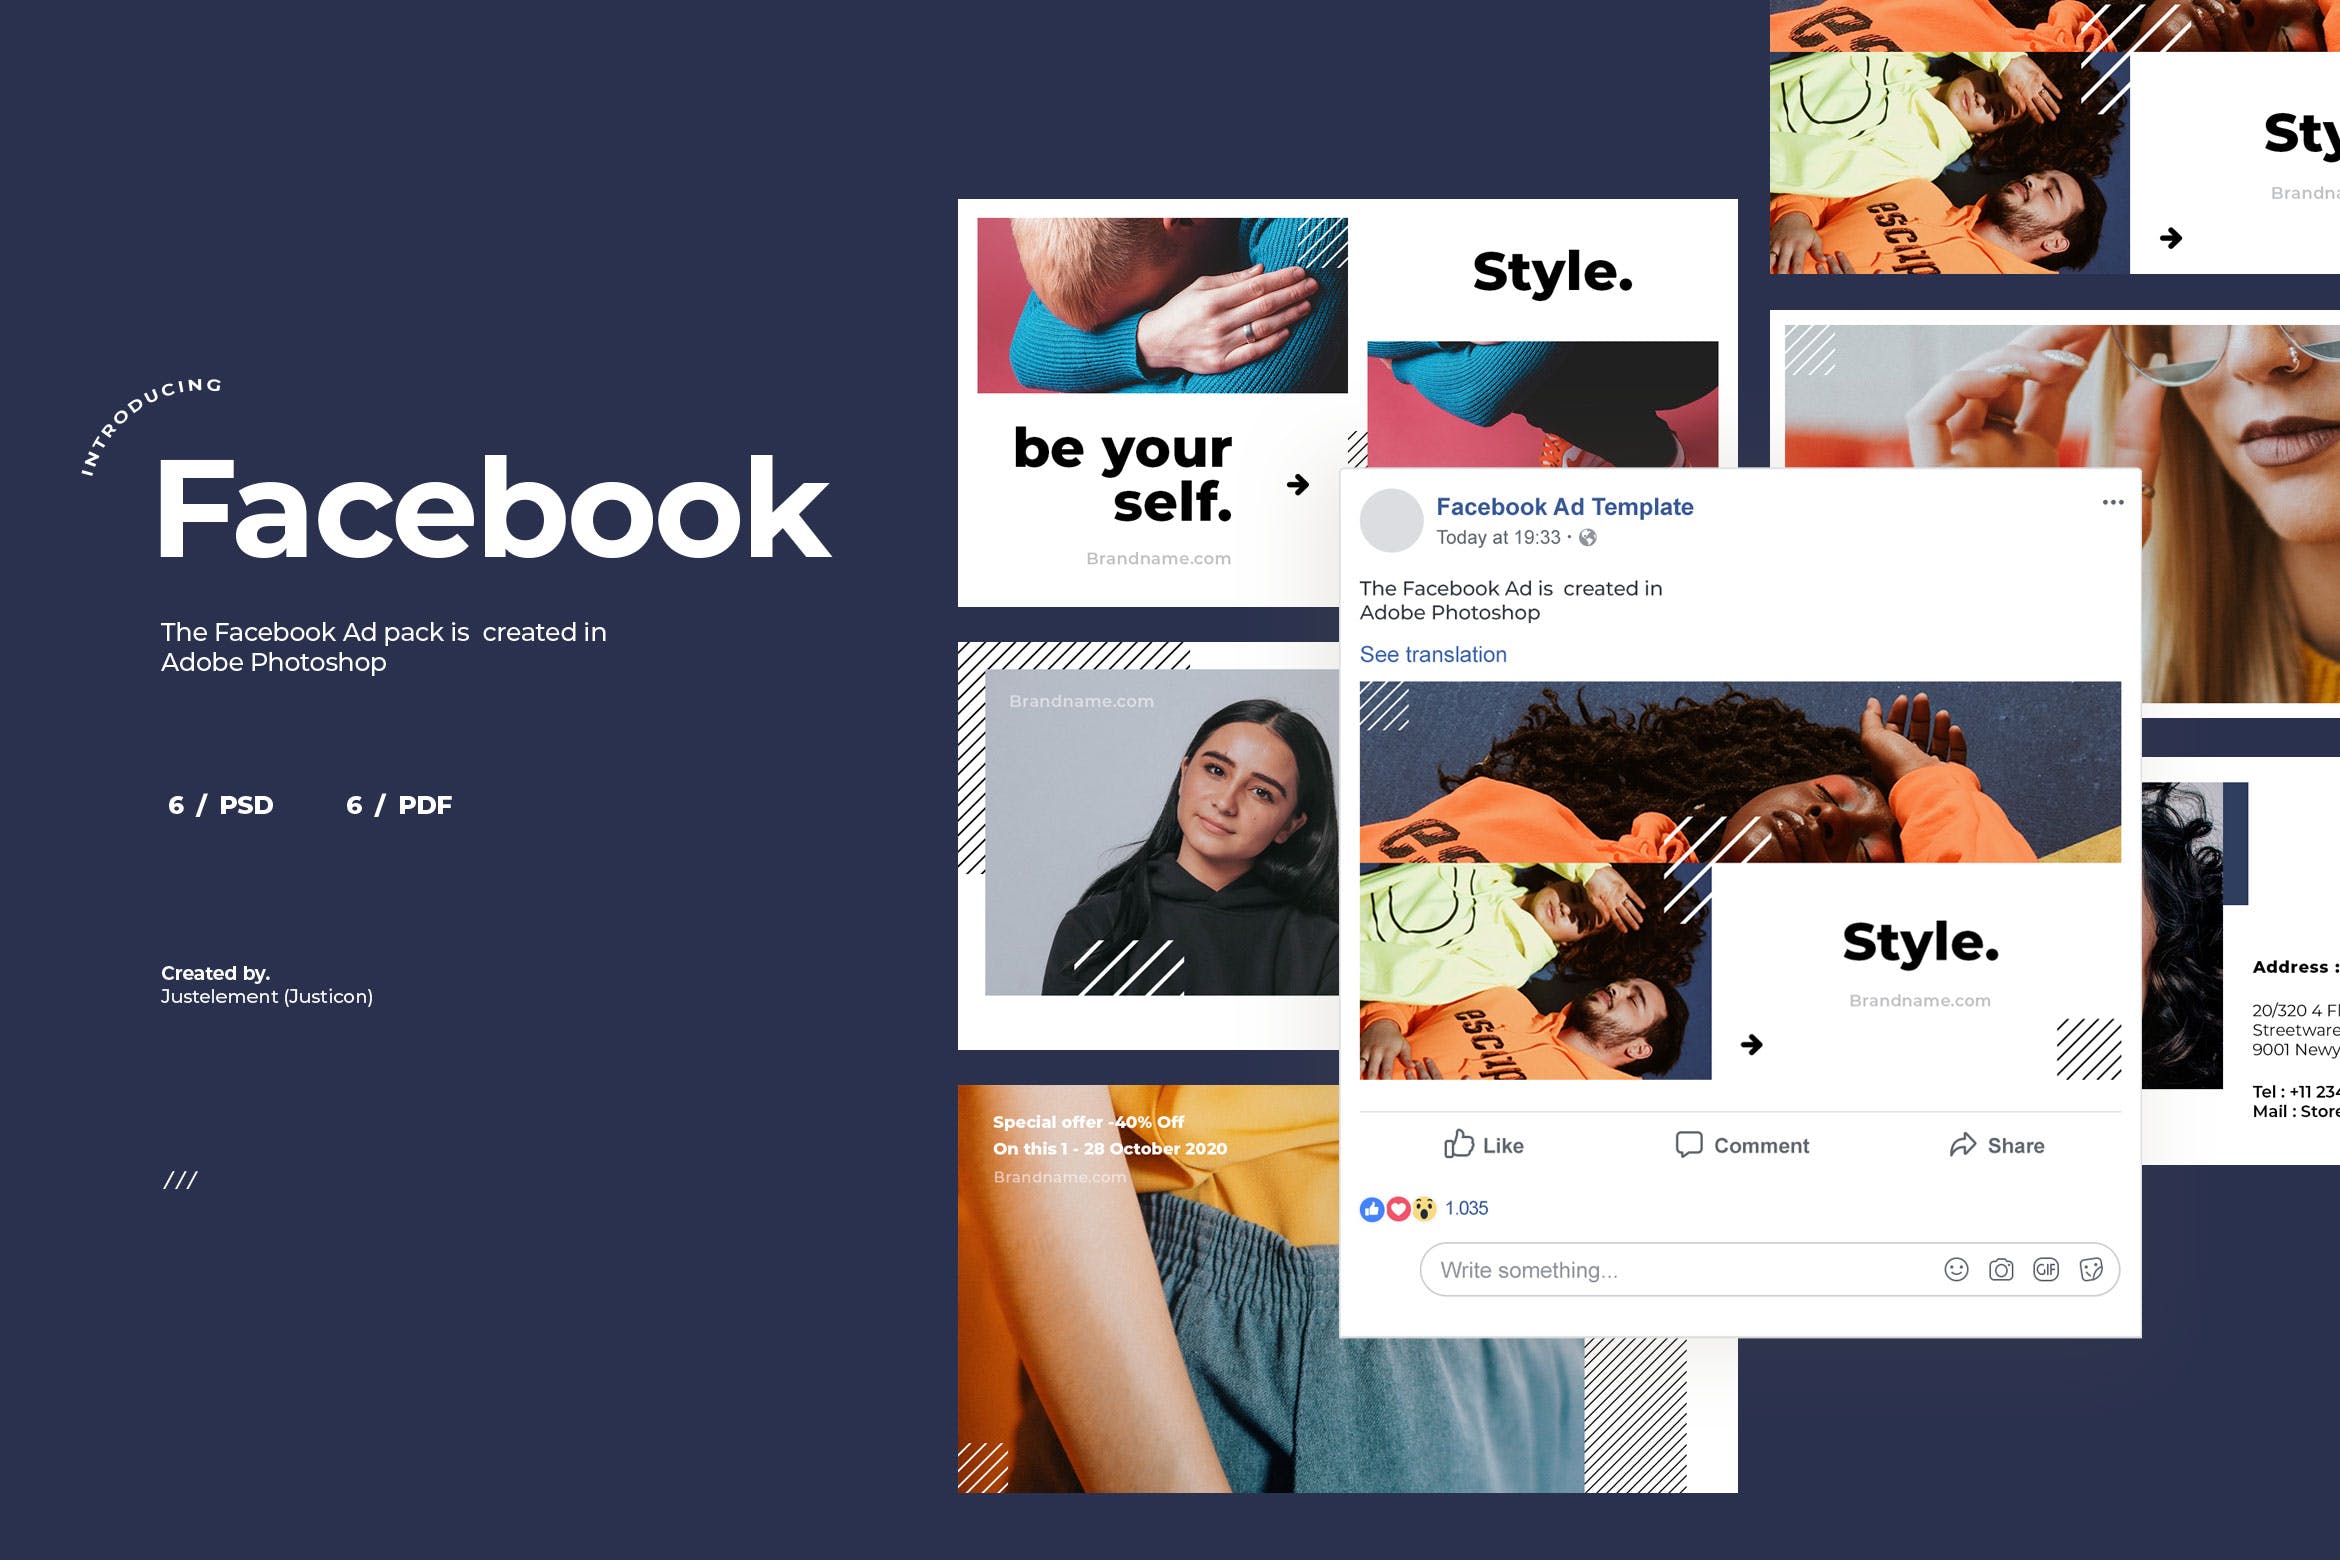 服饰品牌Facebook社交推广广告设计模板16设计网精选v8 Facebook Ad Template Vol.8插图